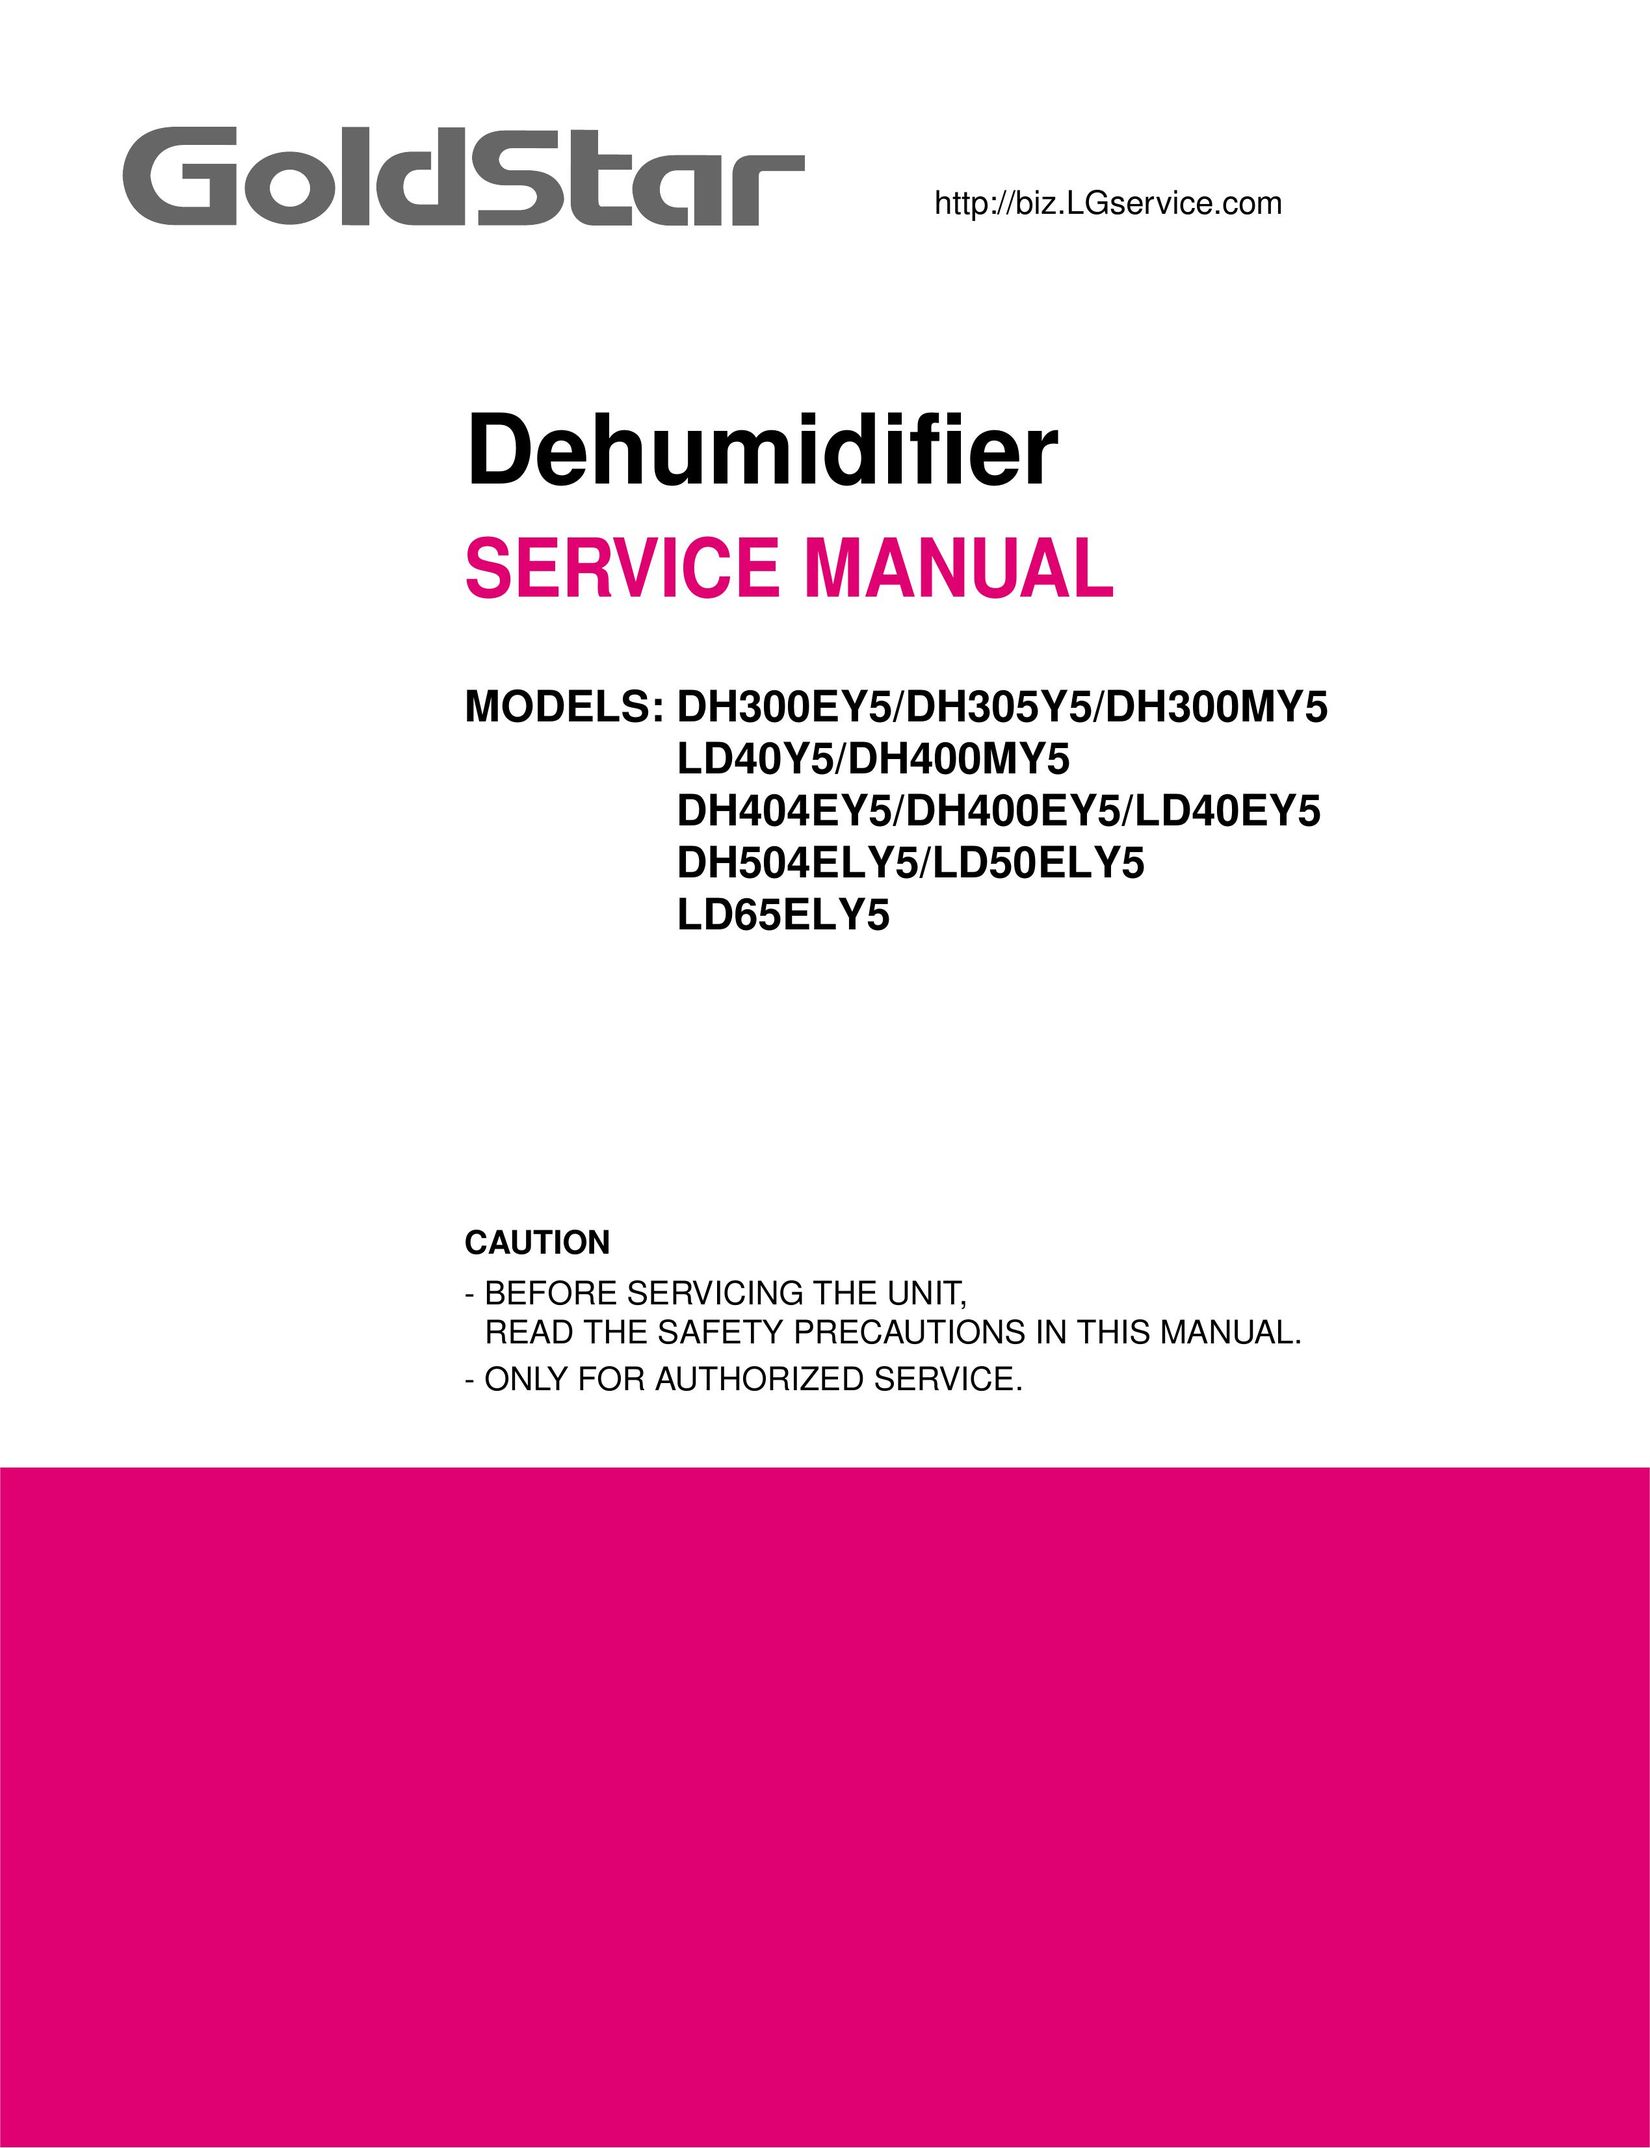 Frigidaire LD40Y5 Dehumidifier User Manual